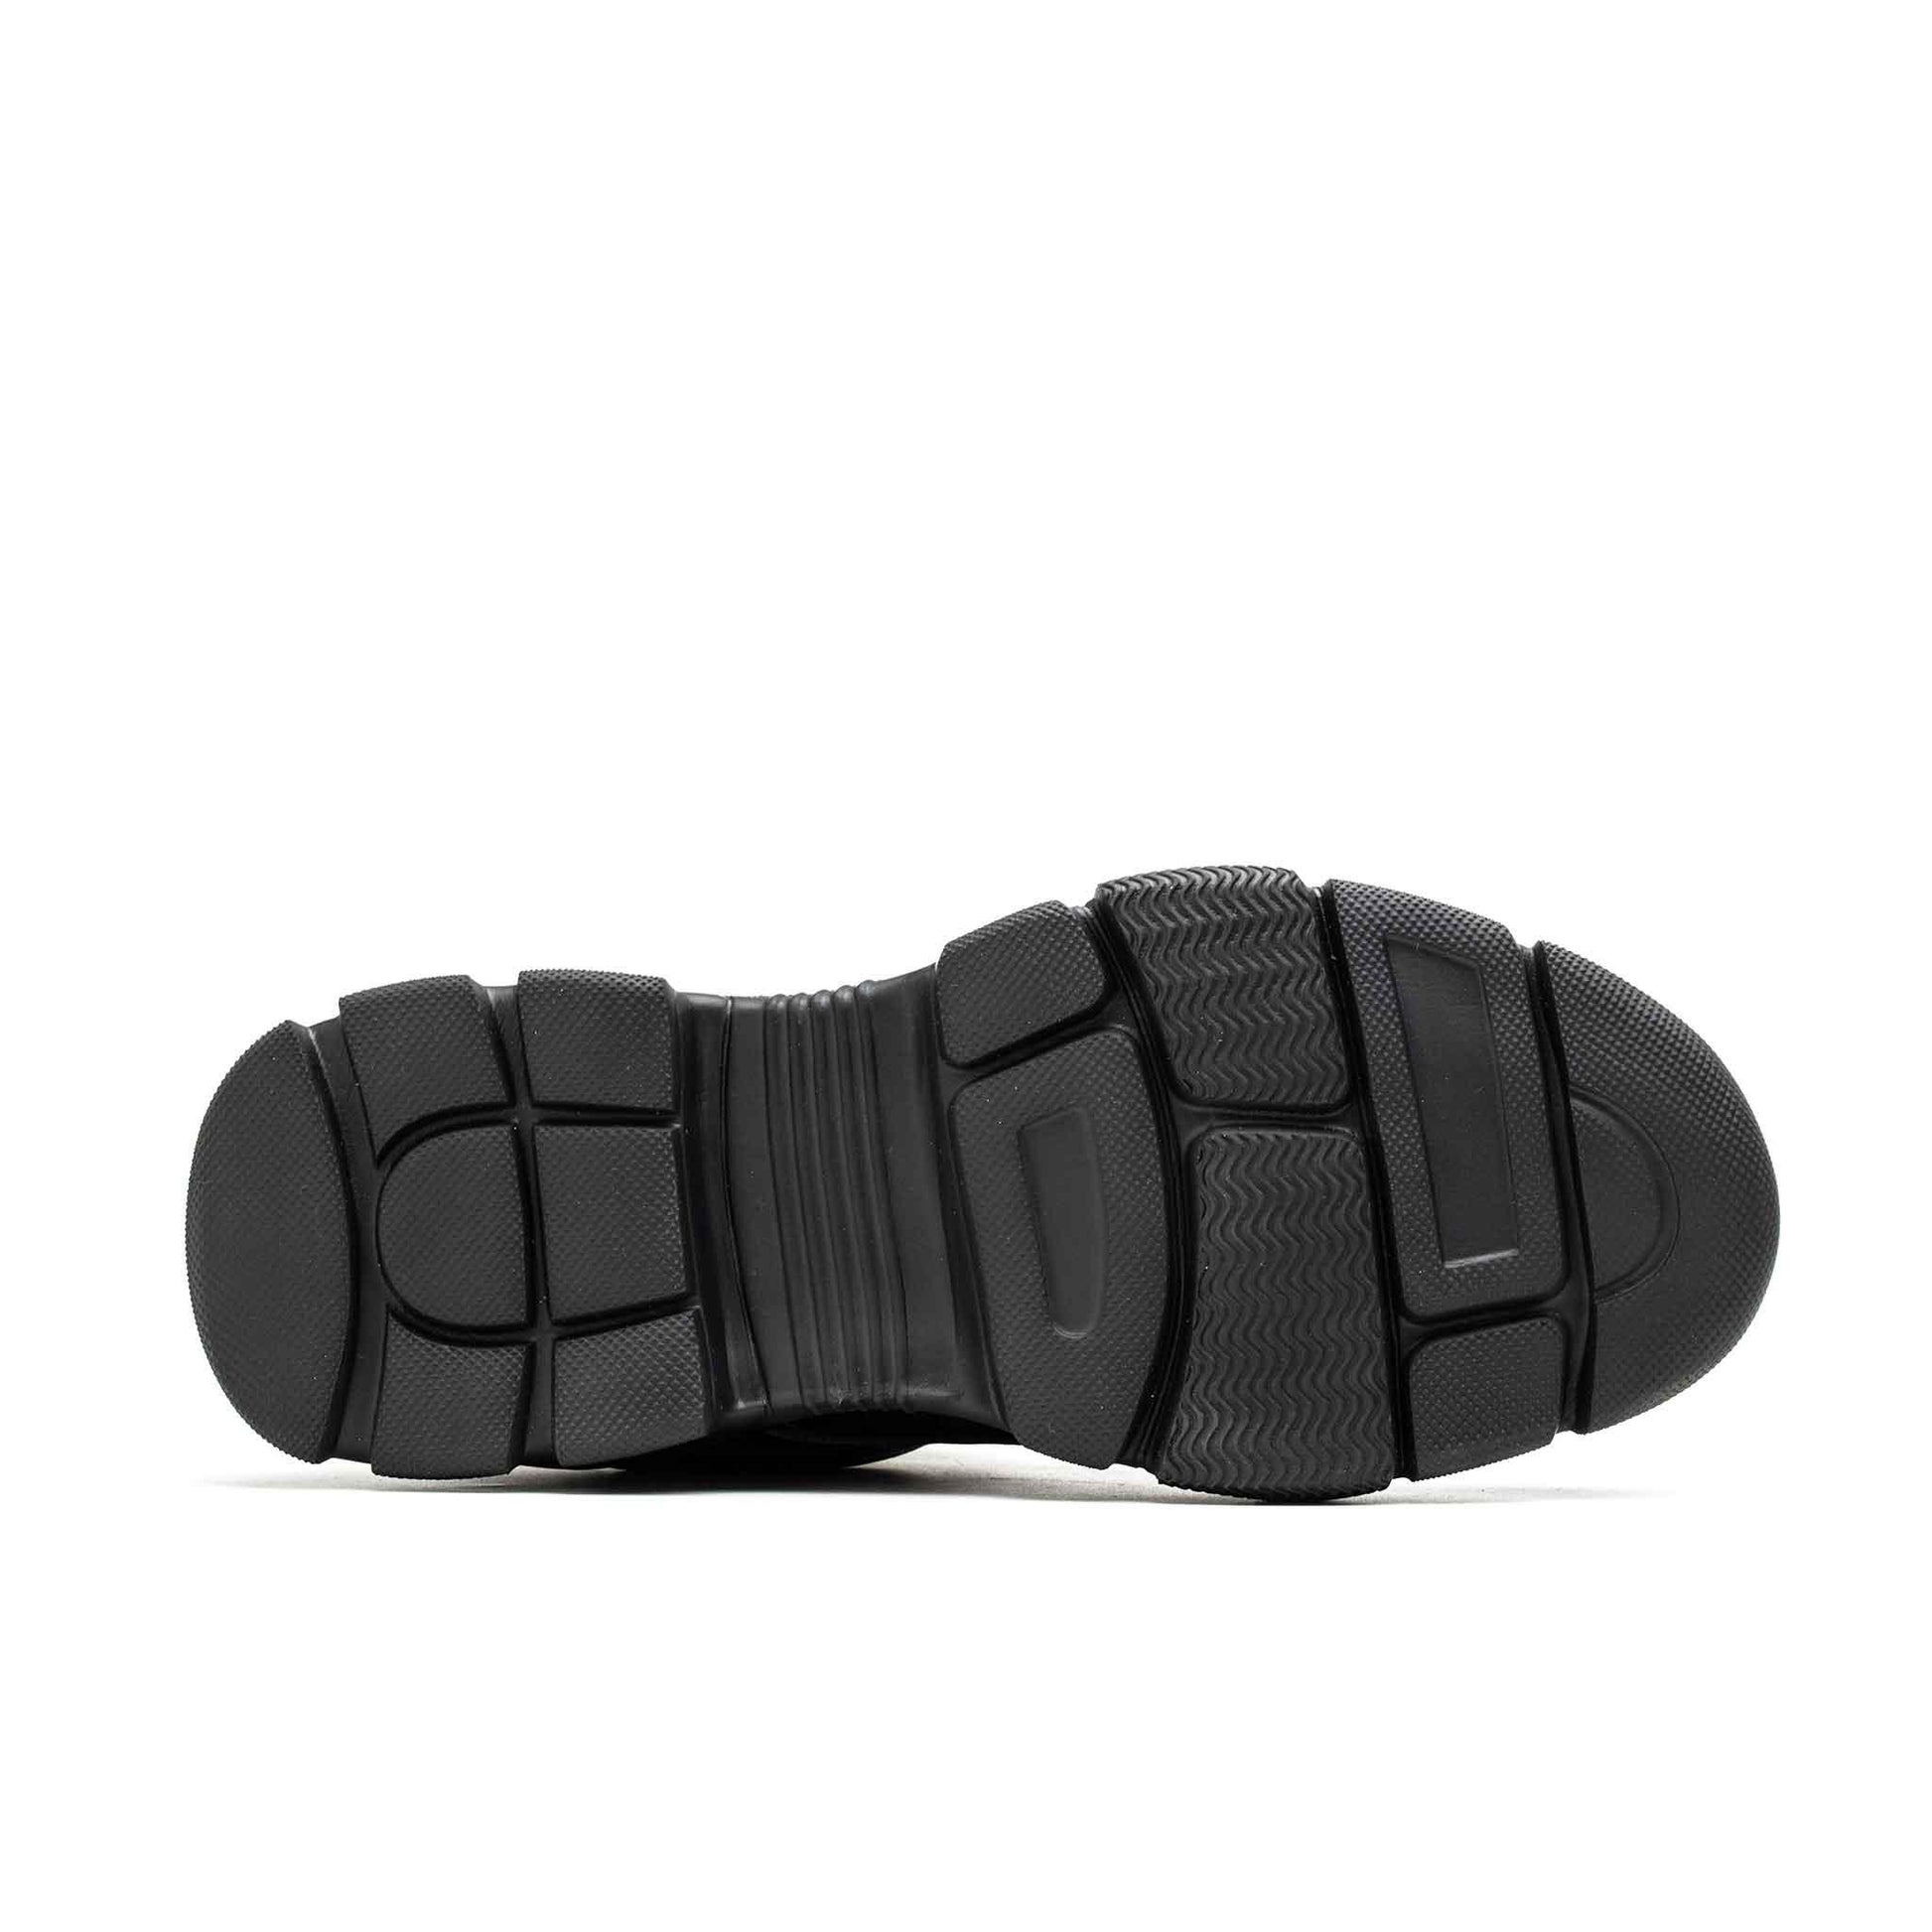 Men's Steel Toe Work Shoes - Breathable | B215 - USINE PRO Footwear